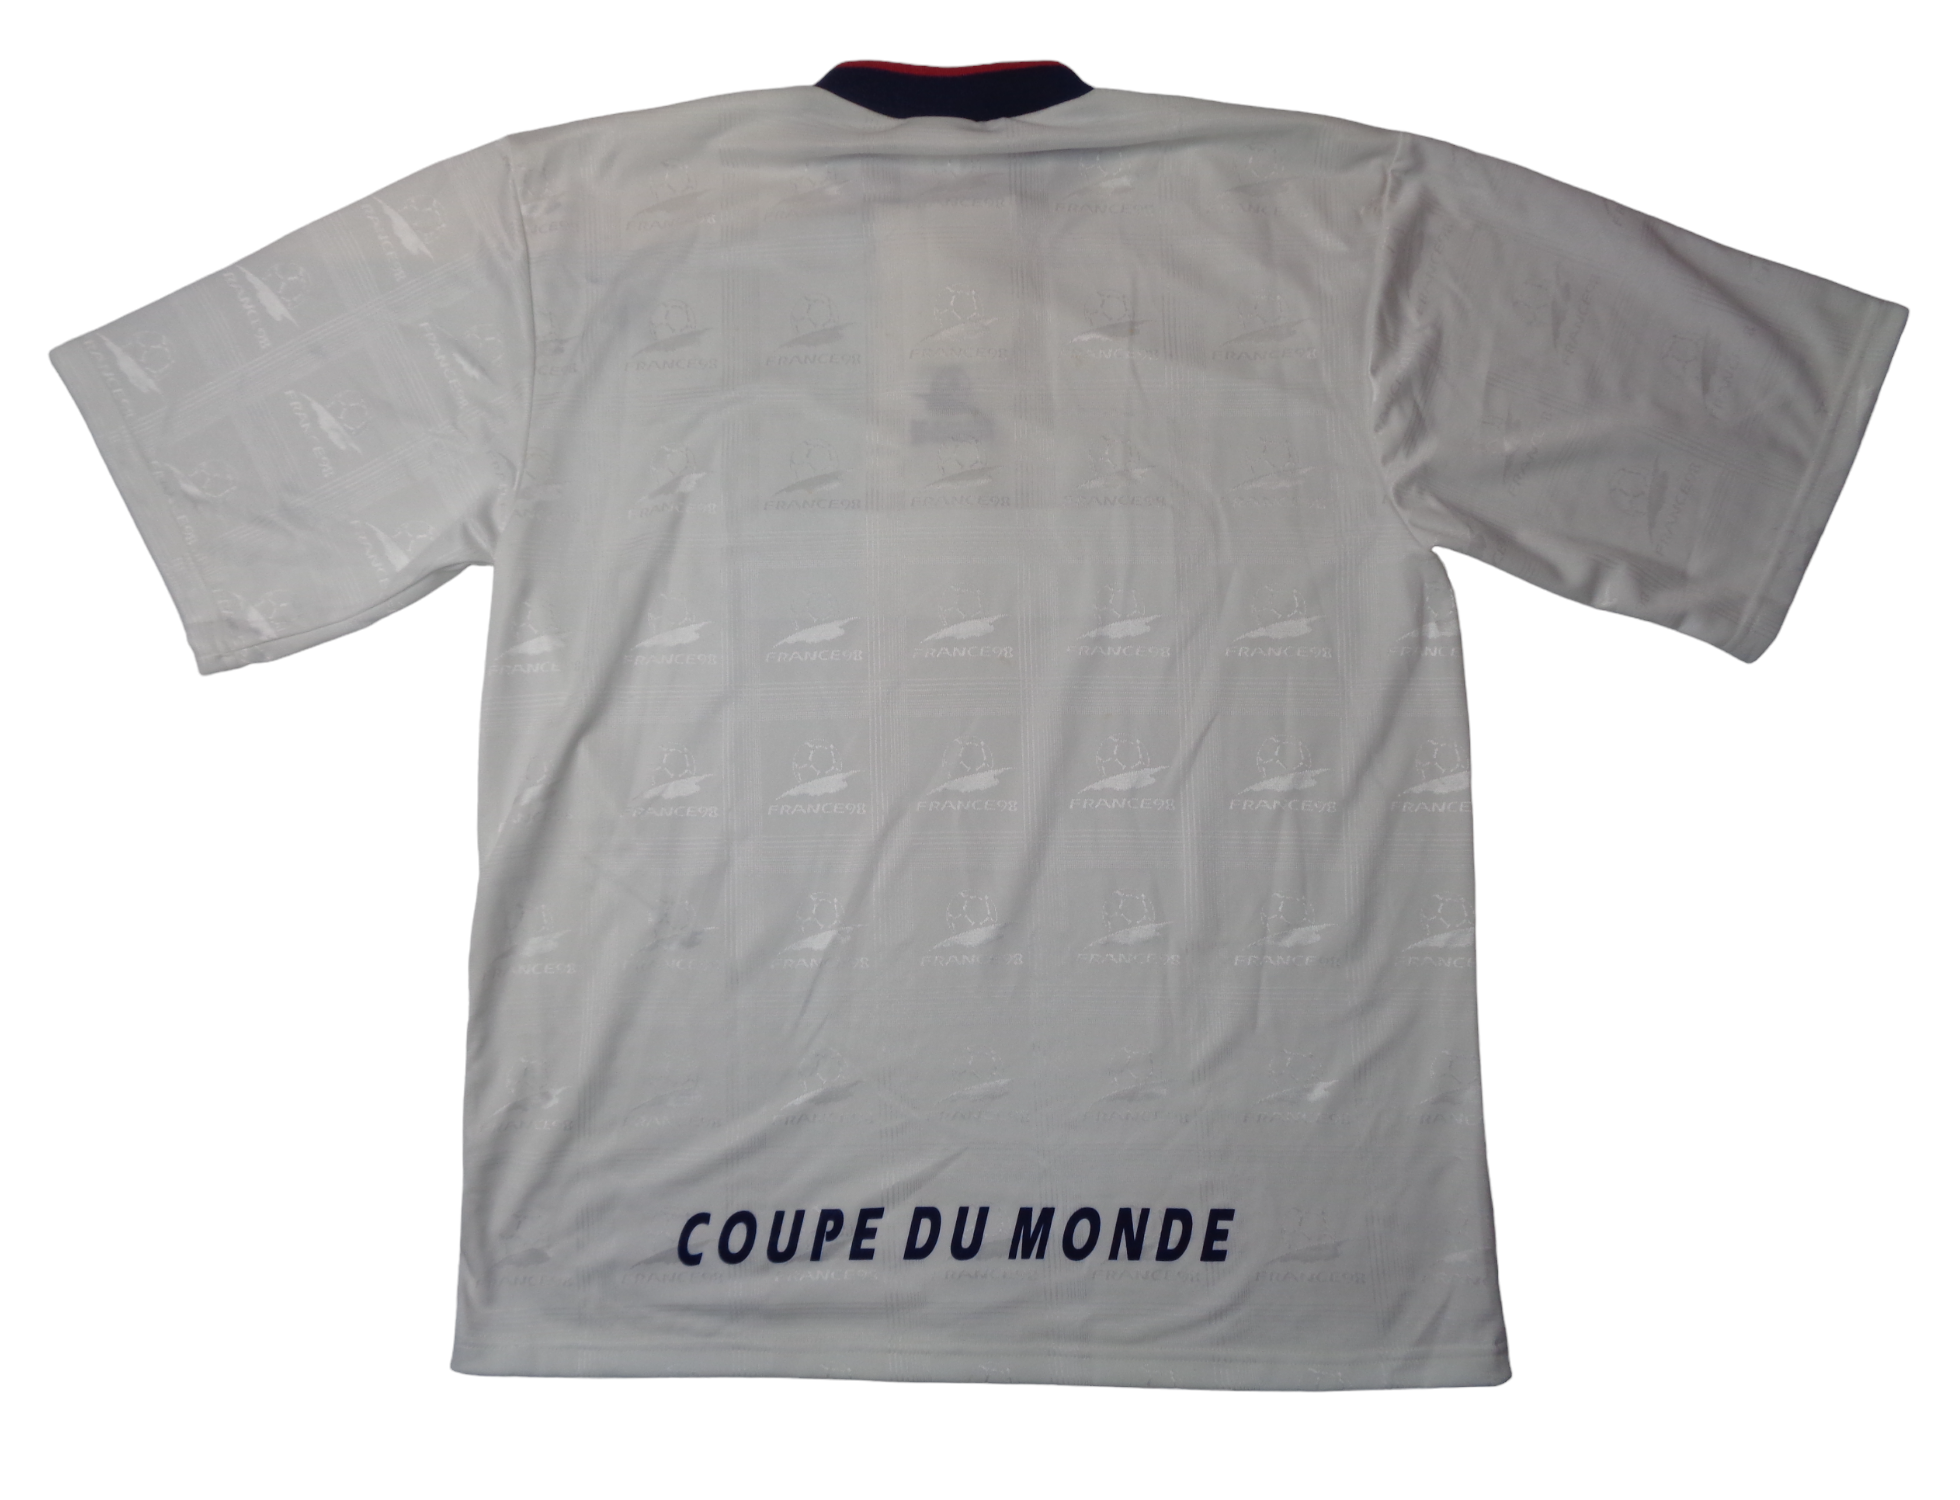 FRANCE 1998 COUPE DU MONDE WORLD CUP MERCHANDISE SHIRT - SIZE LARGE